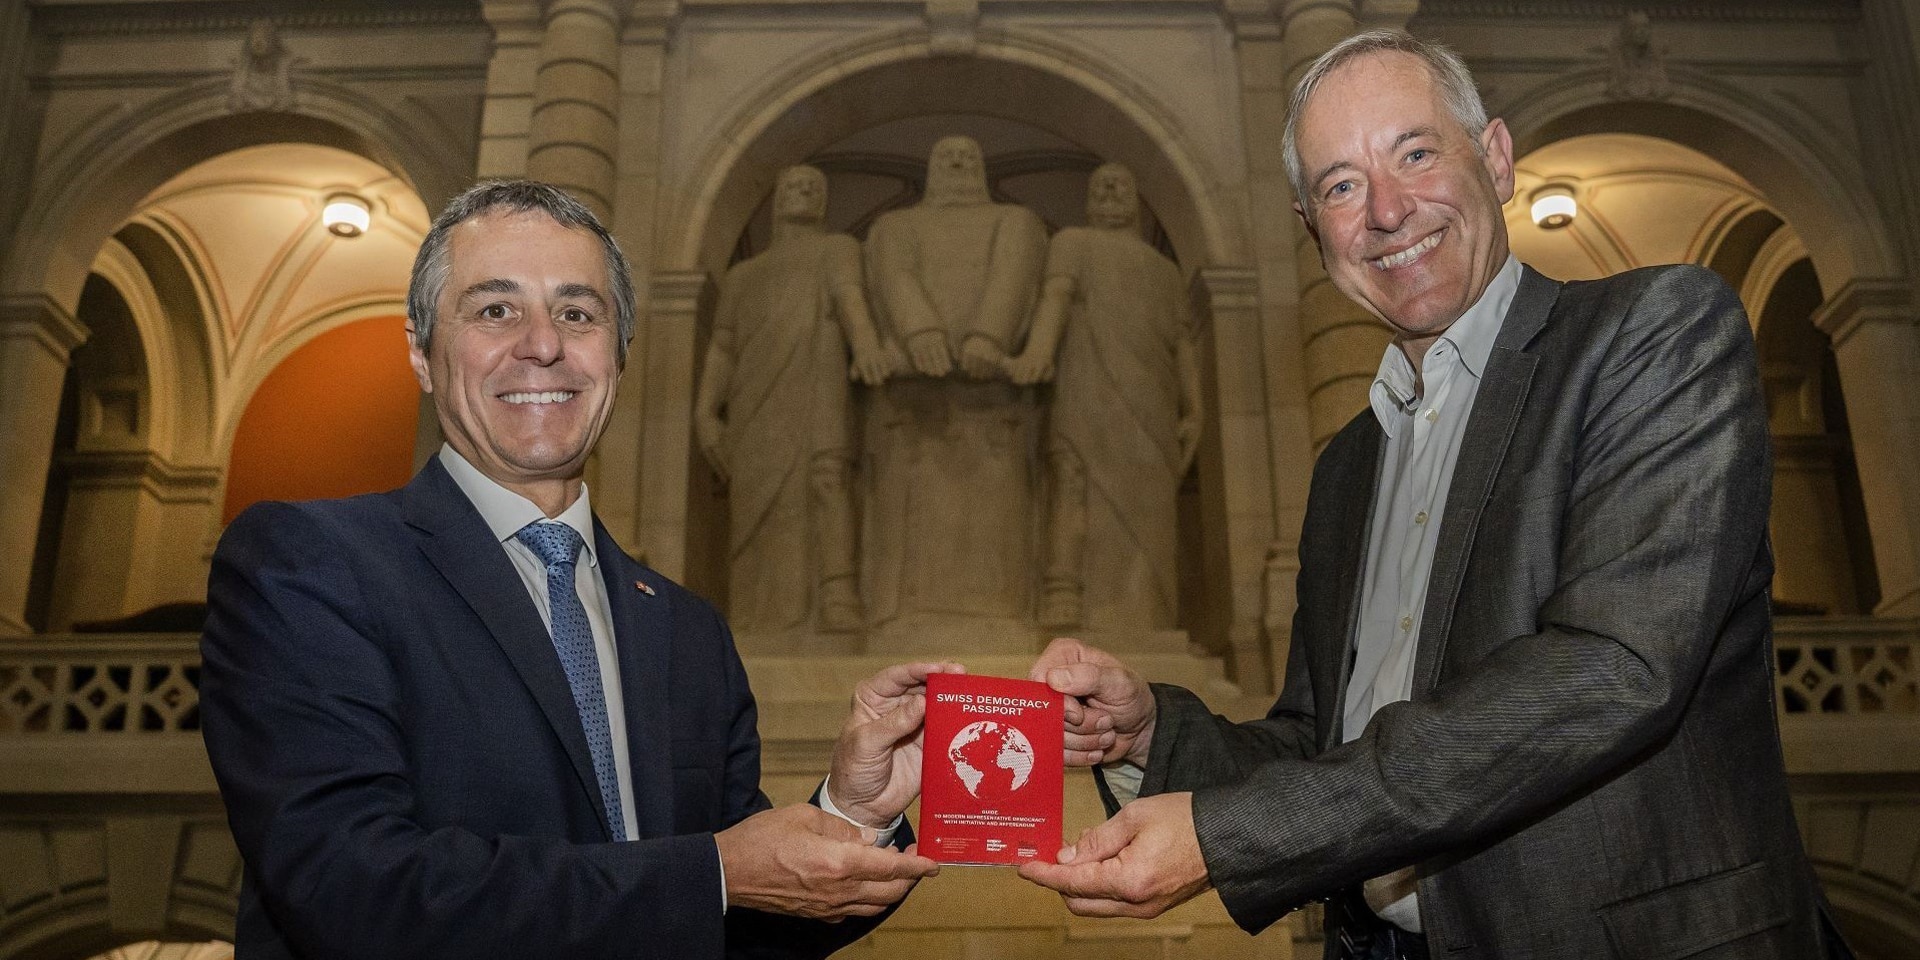 .Il consigliere federale Ignazio Cassis e Bruno Kaufmann posano con lo Swiss Democracy Passport.